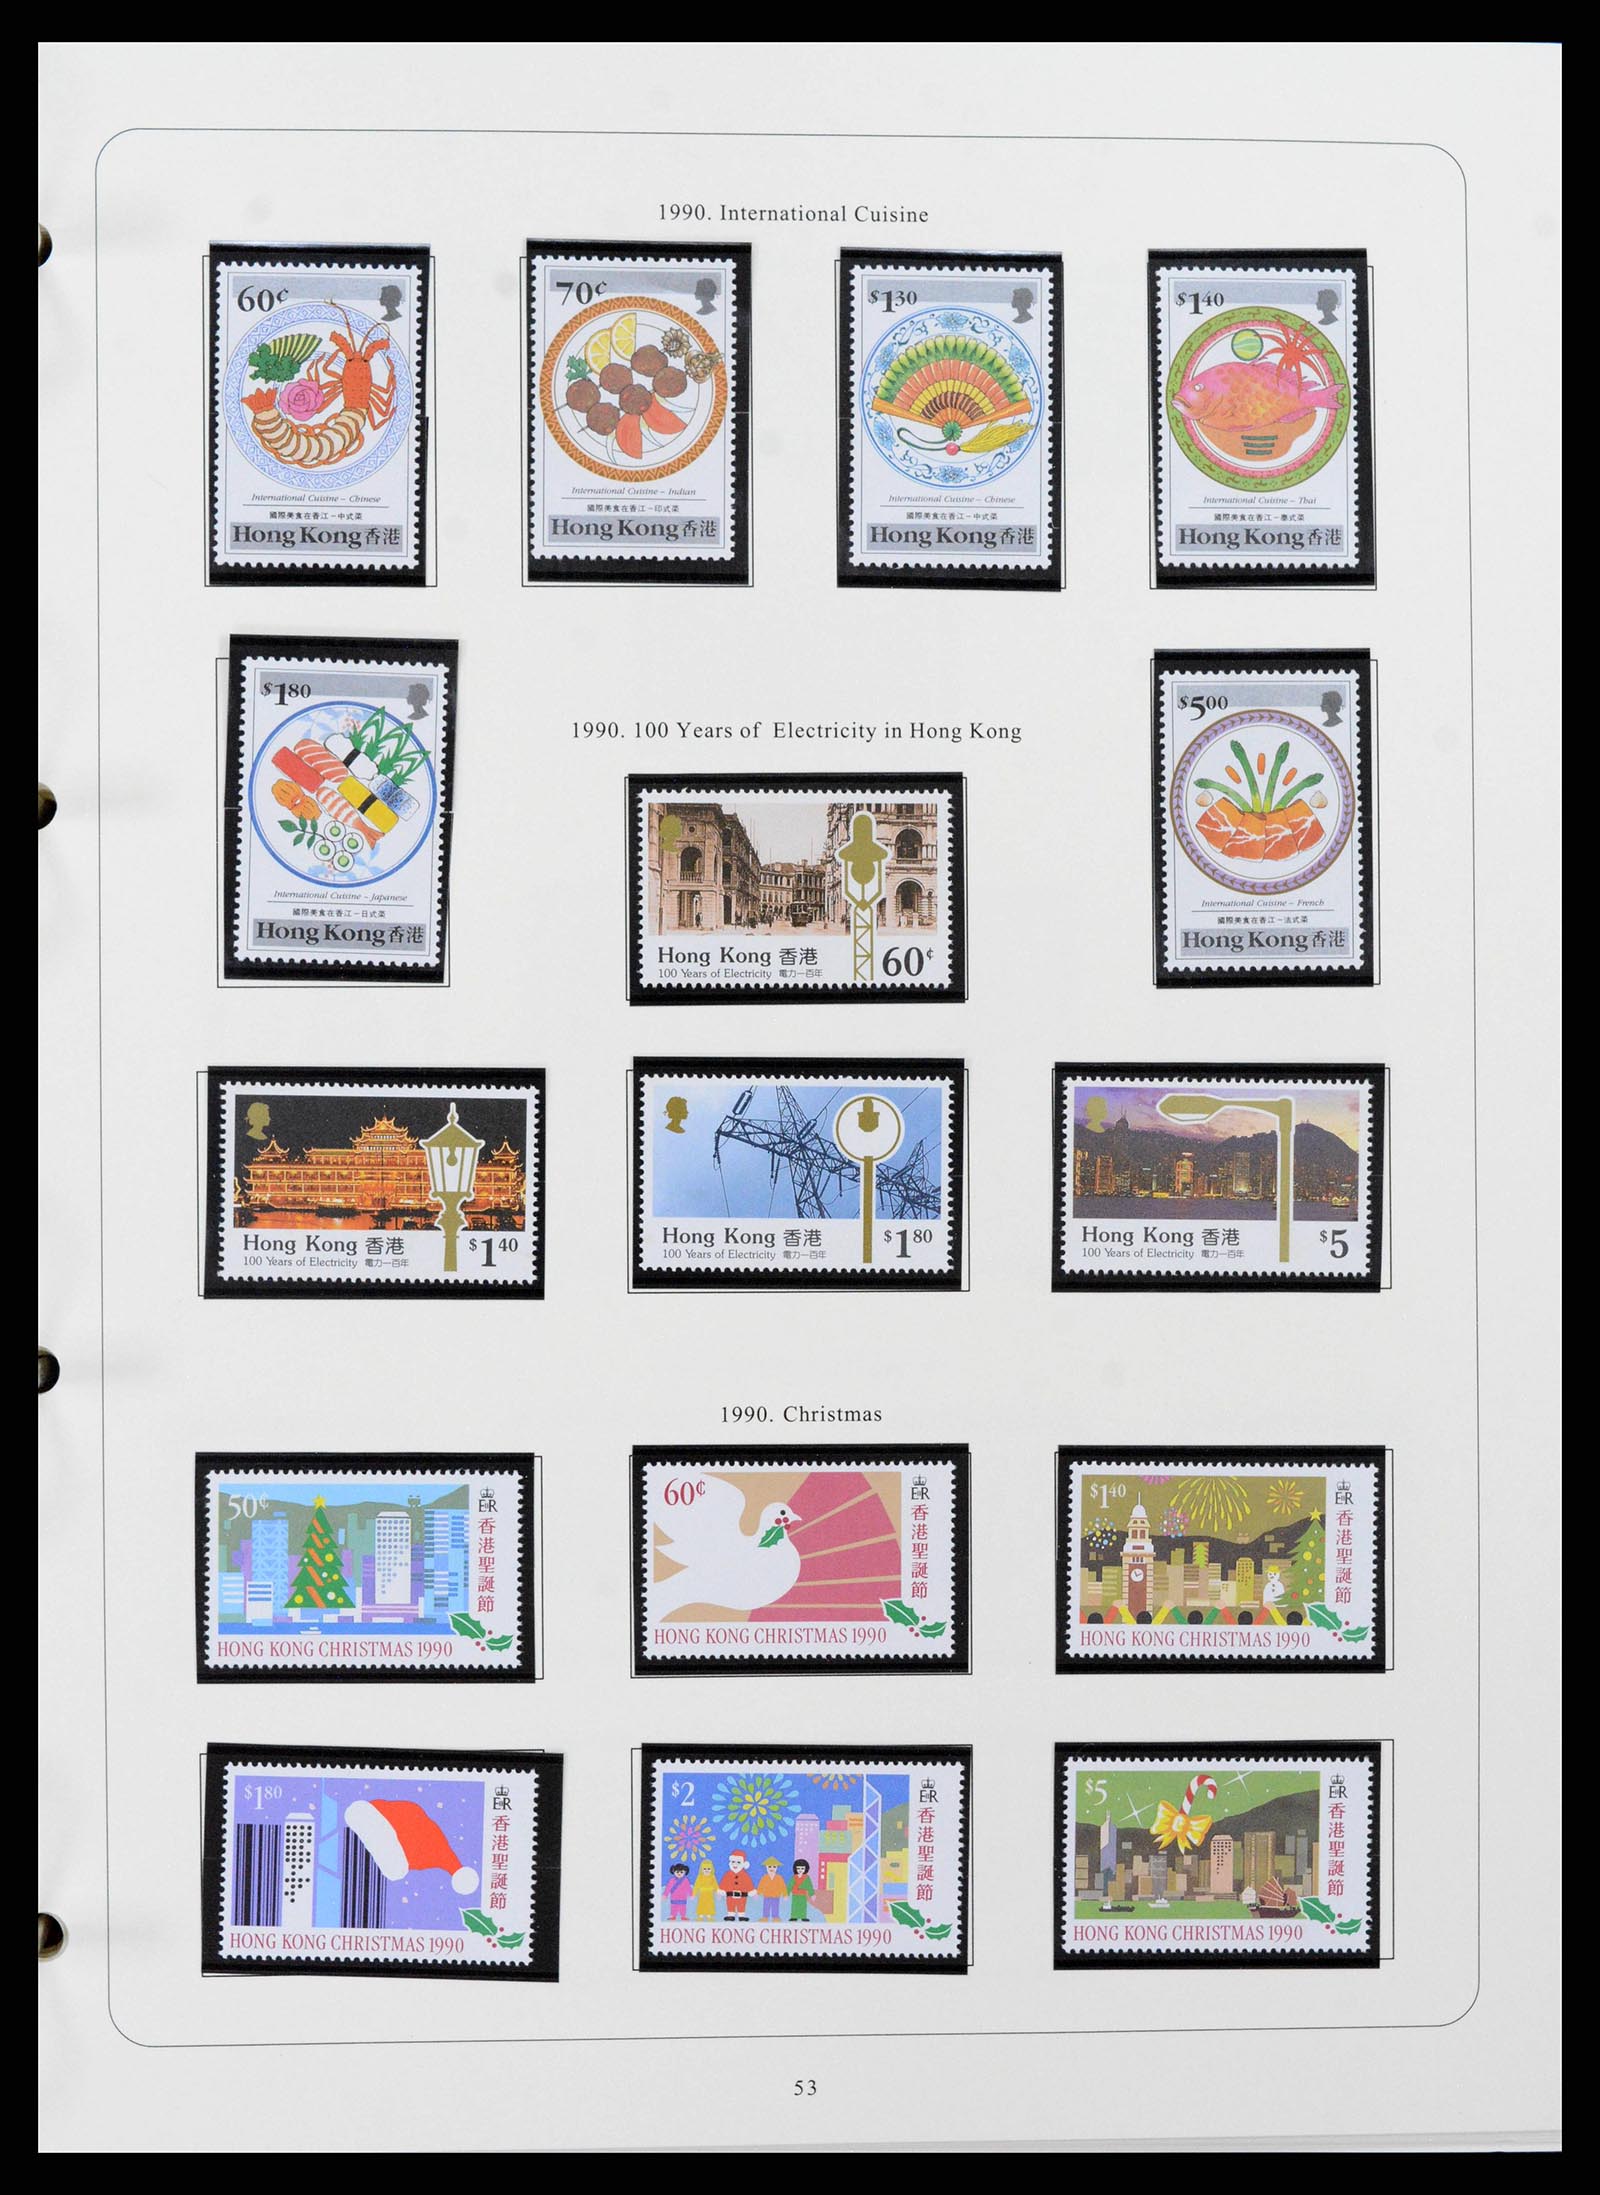 38351 0044 - Stamp collection 38351 Hong Kong 1862-1997.